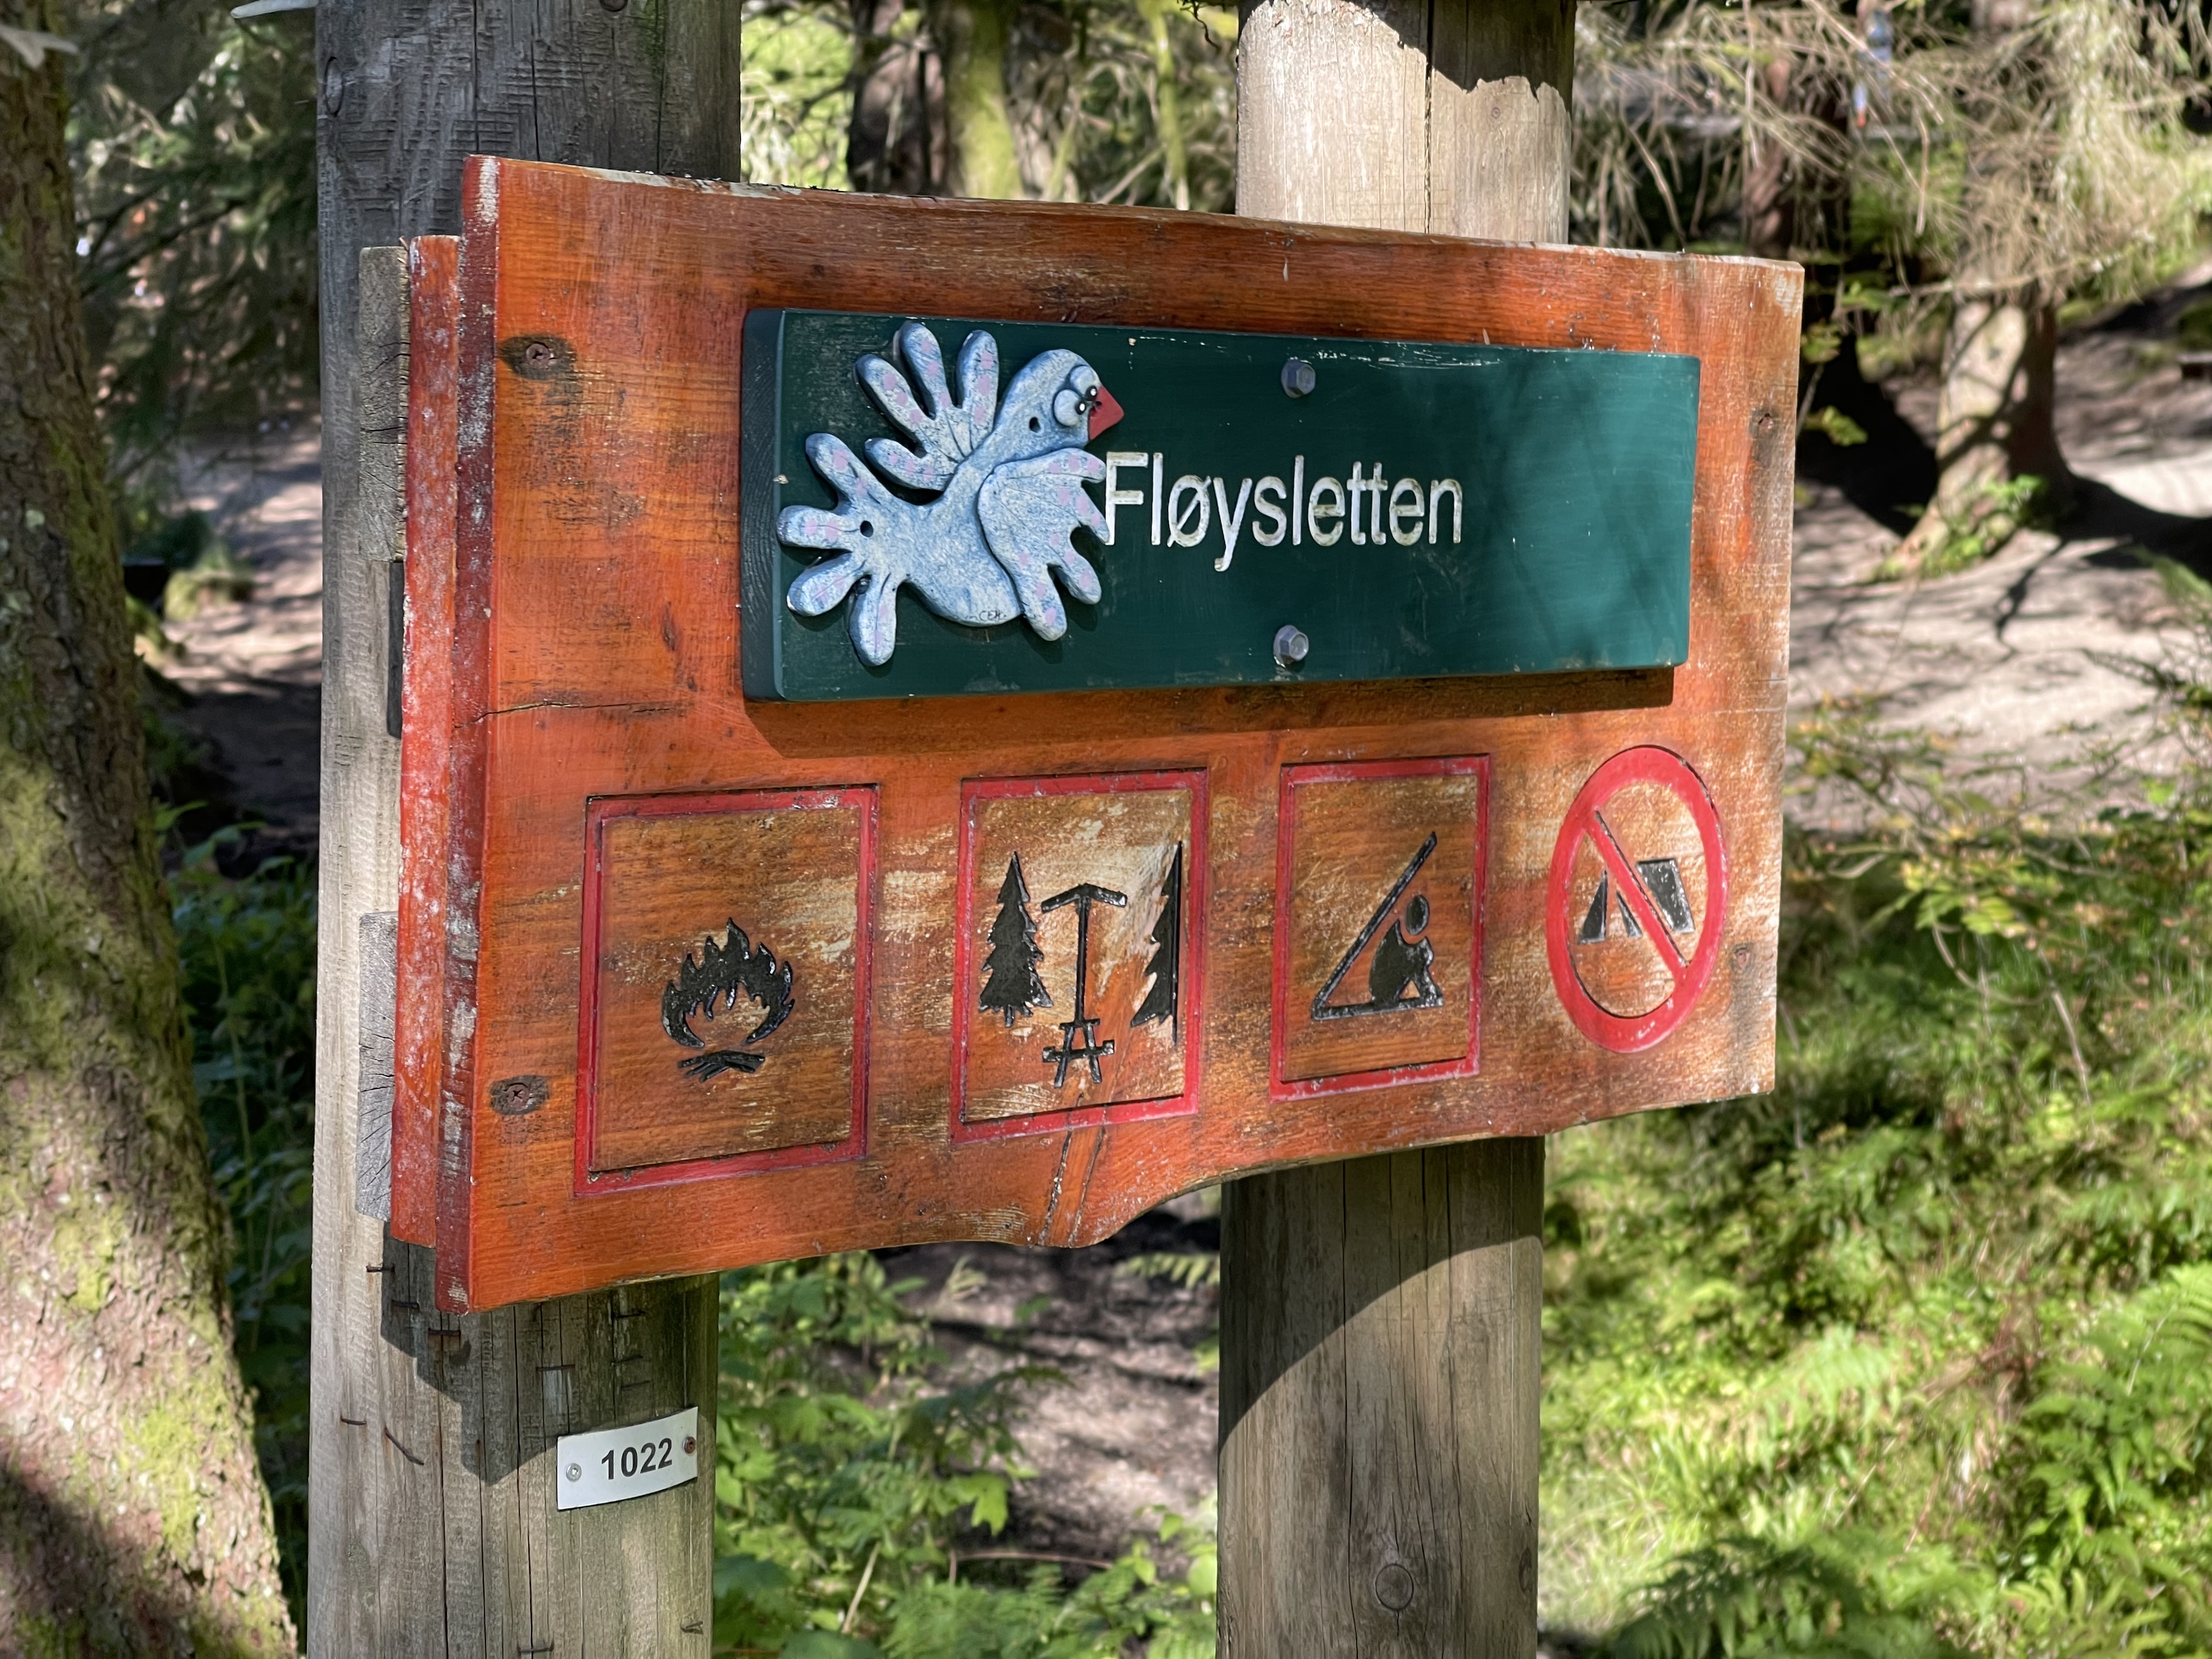 Metsän keskellä kahteen paksuun puutolppaan kiinnitetty kyltti. Kyltin yläosassa näkyy valkoinen kyyhkynen ja paikannimi Fløysletten. Alaosassa neljä kuvaketta: nuotiopaikka, taukopöytä, laavupaikka ja telttailukielto.